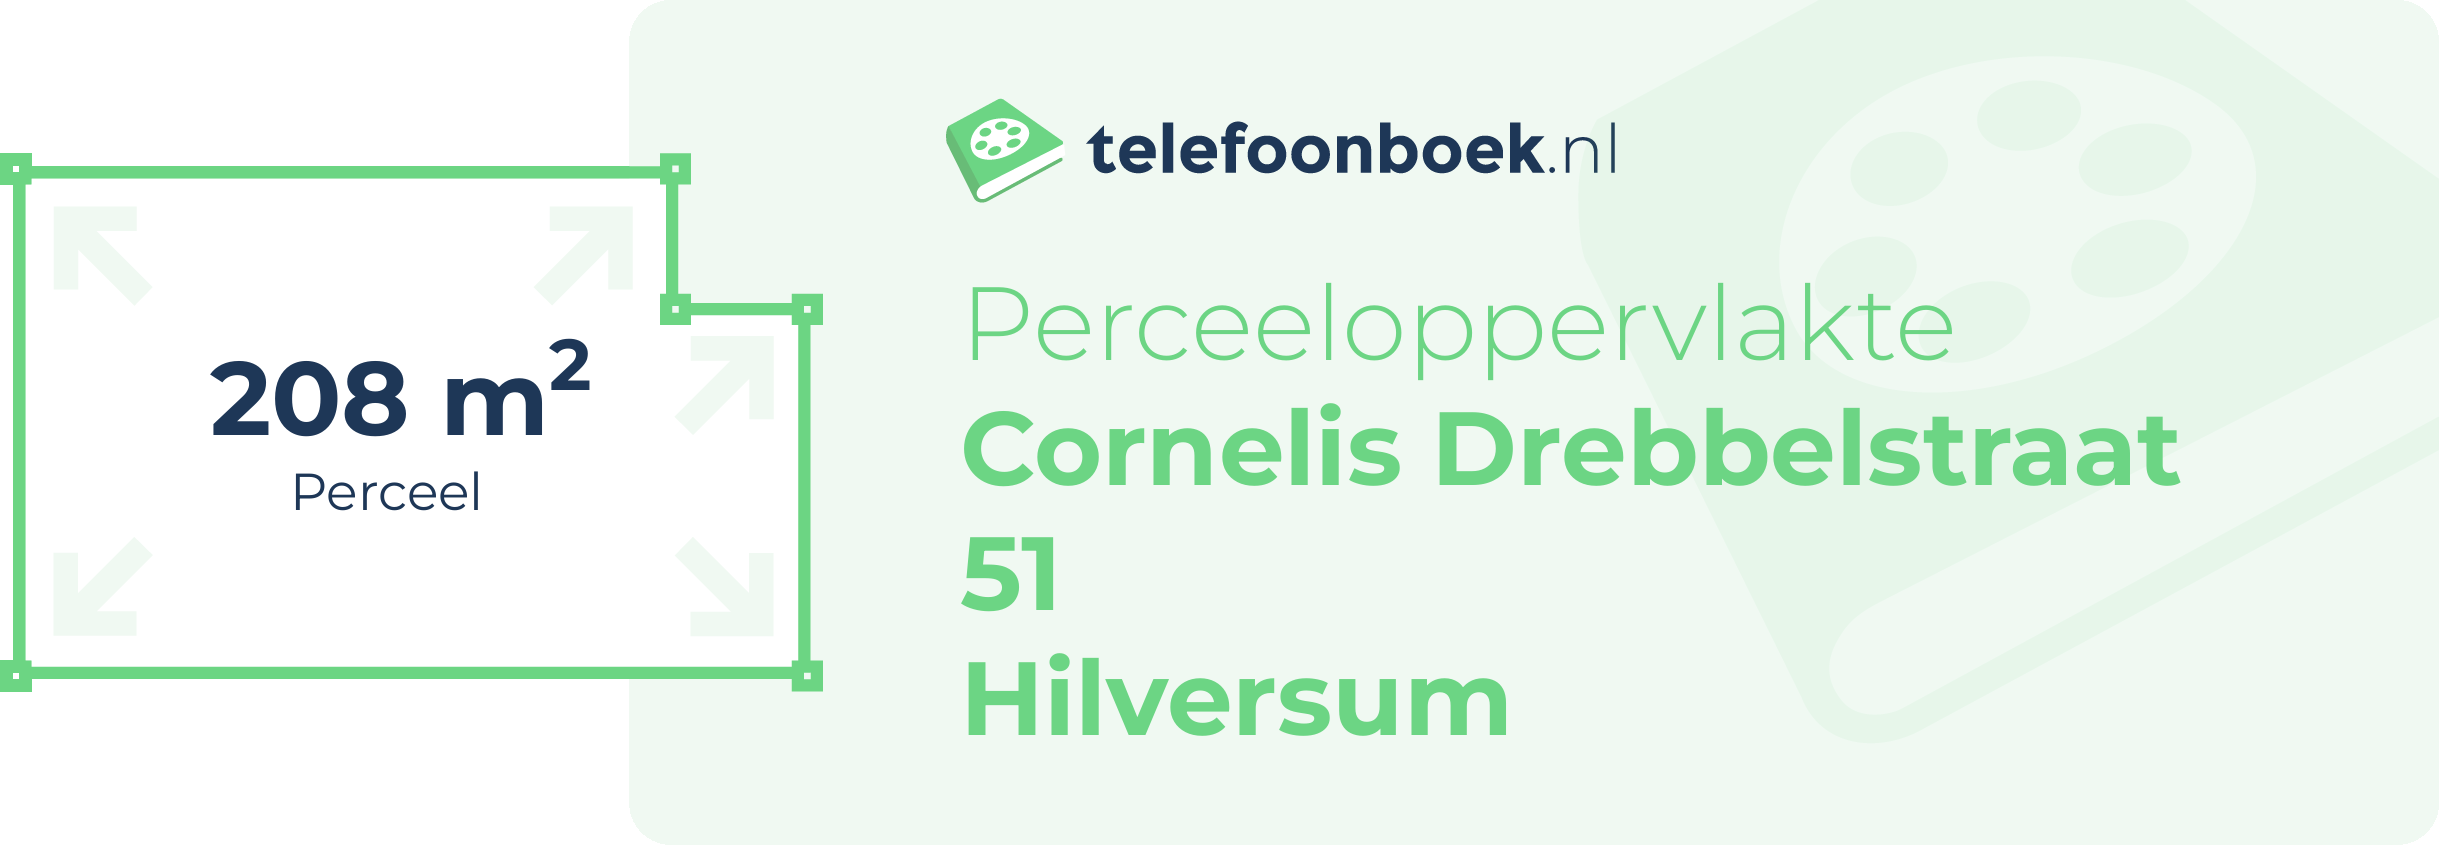 Perceeloppervlakte Cornelis Drebbelstraat 51 Hilversum